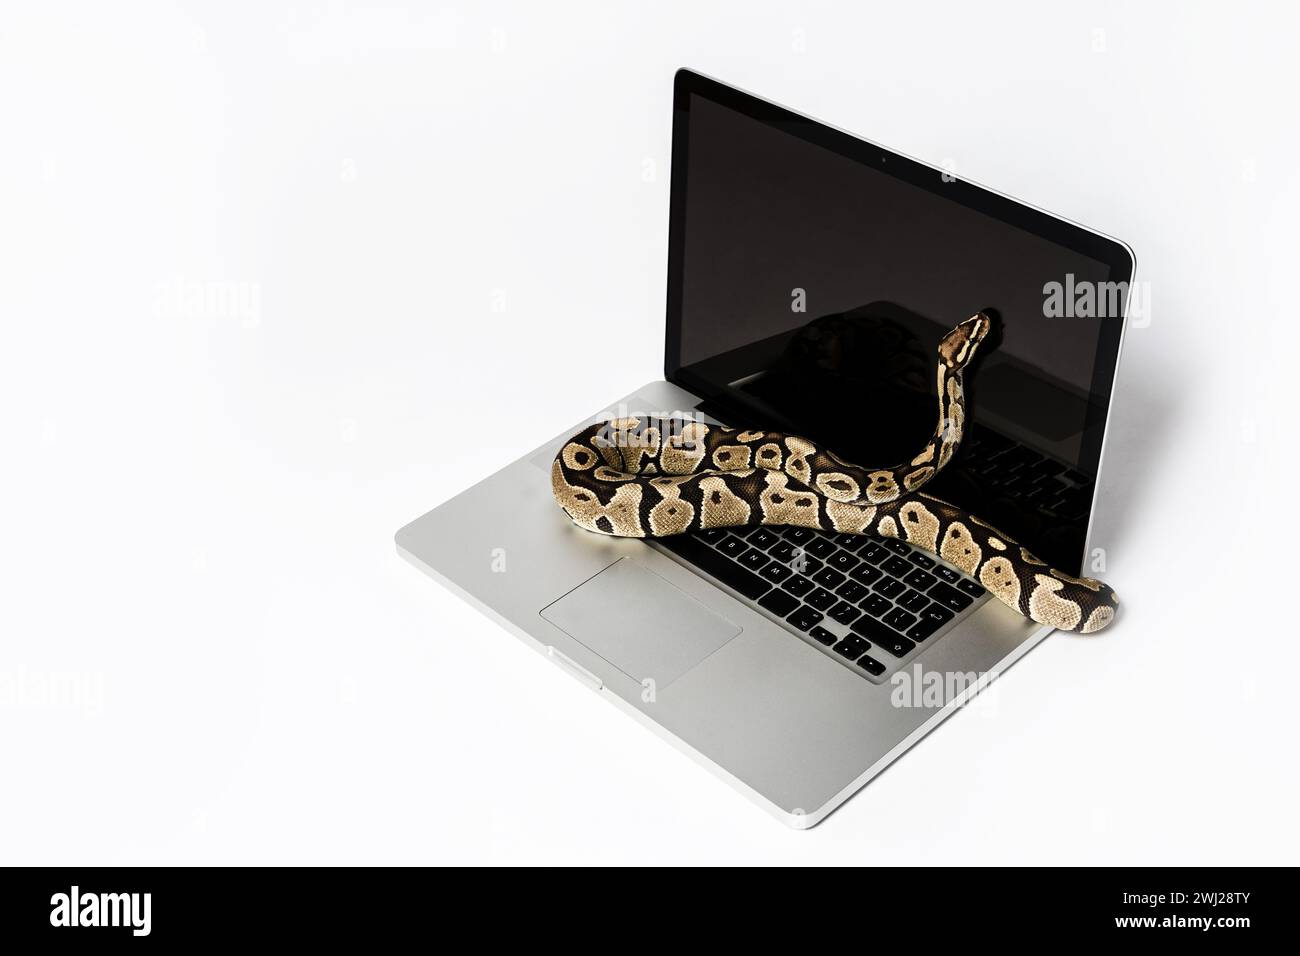 Serpent Python et ordinateur portable. Concept d'utilisation d'un langage de programmation de haut niveau pour le génie logiciel. Banque D'Images